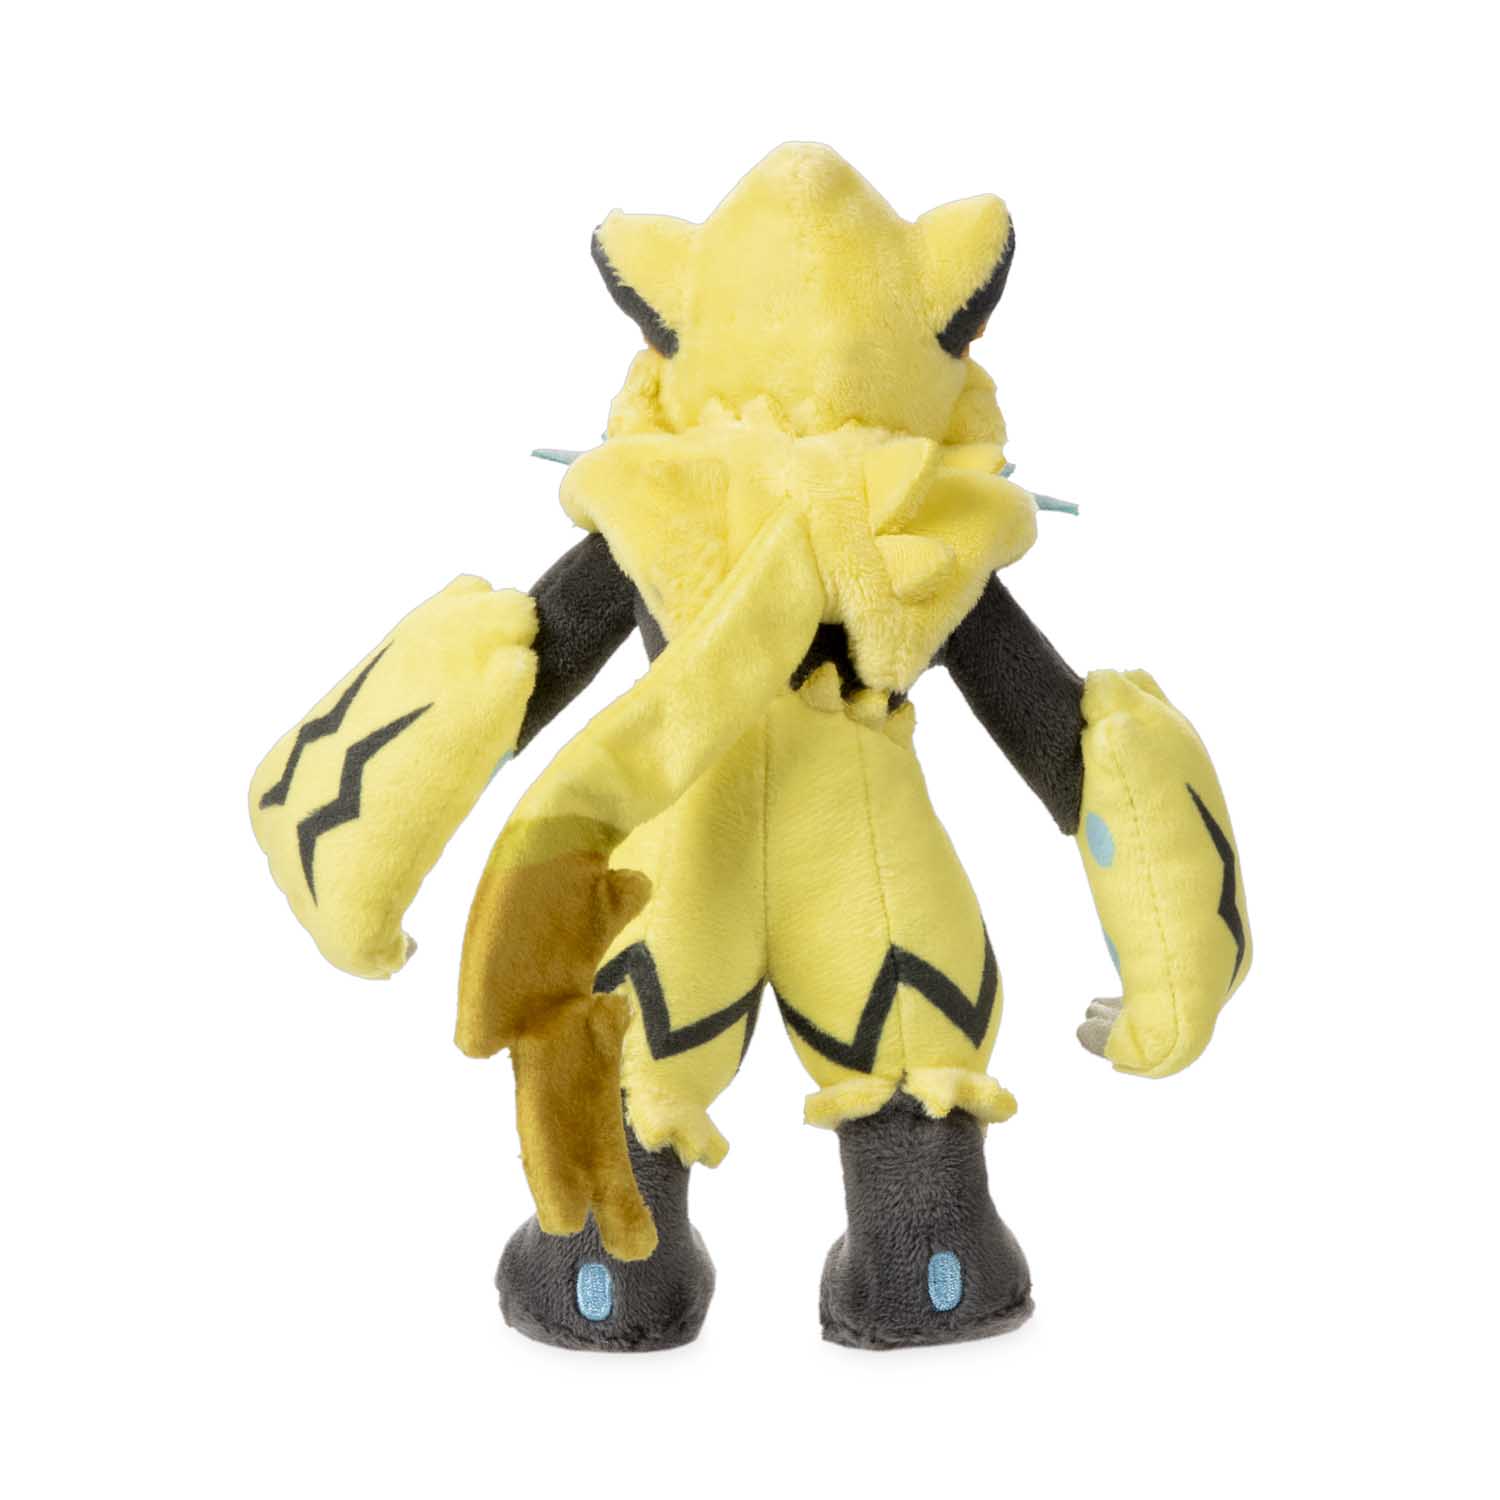 Pokemon Sun and Moon Zeraora Plush Toy Stuffed Doll Figure Soft Gift 12 inch NEW